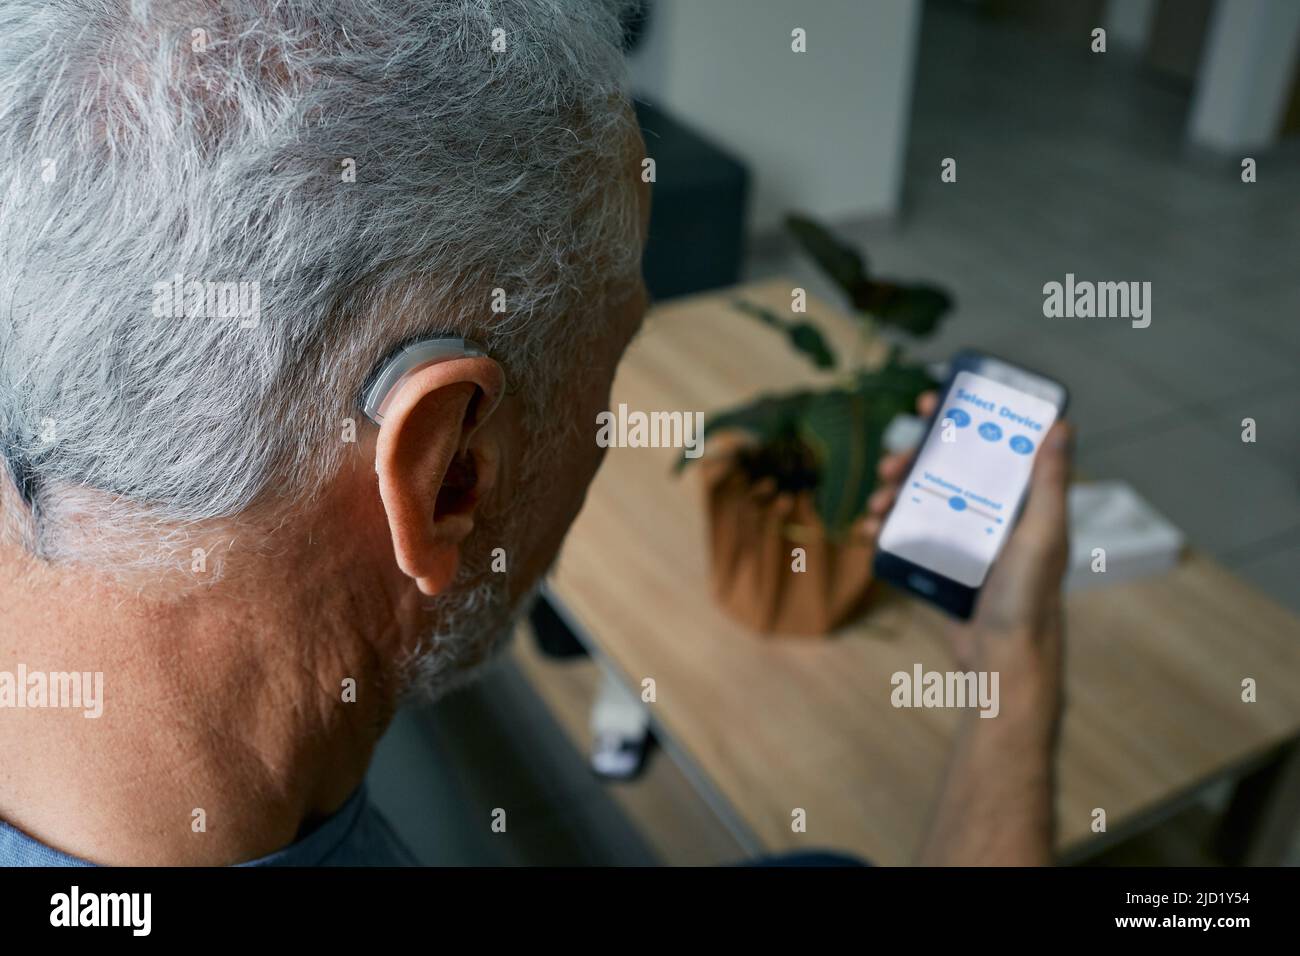 Un hombre mayor con problemas auditivos que ajusta la configuración de su audífono retroauricular mediante un smartphone. Audífonos con tecnologías innovadoras en audiología Foto de stock